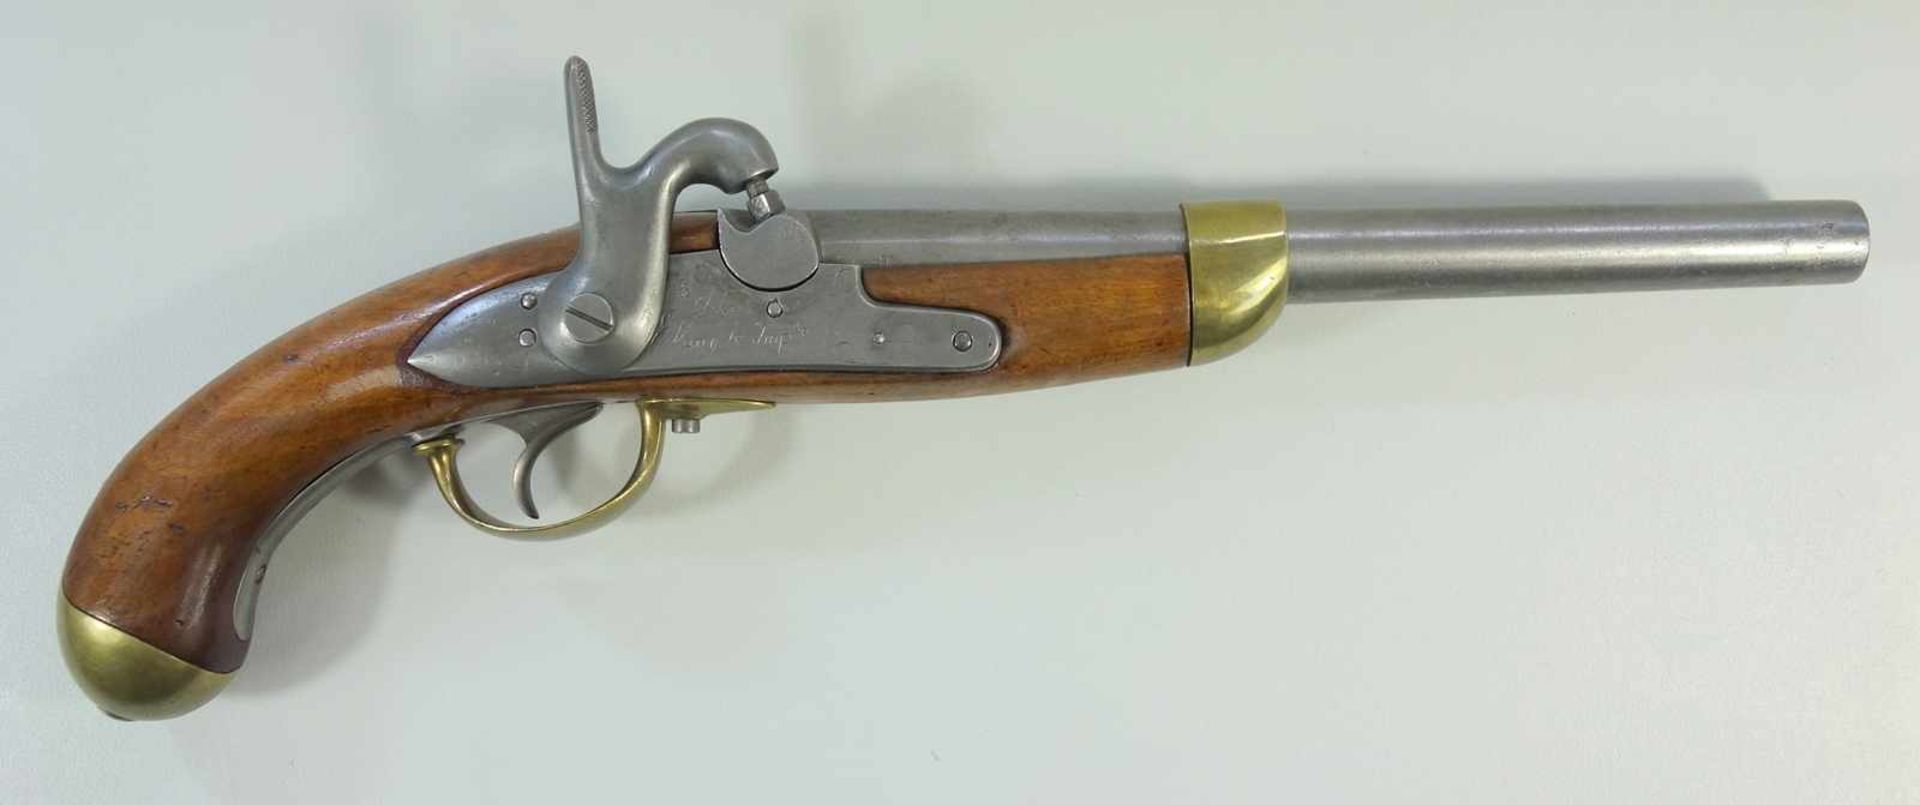 Perkussionspistole, Manufacture Imperiale Liége, Belgien, Kal. 17.6mm, Lauflänge 277mm, gesamt 445m,